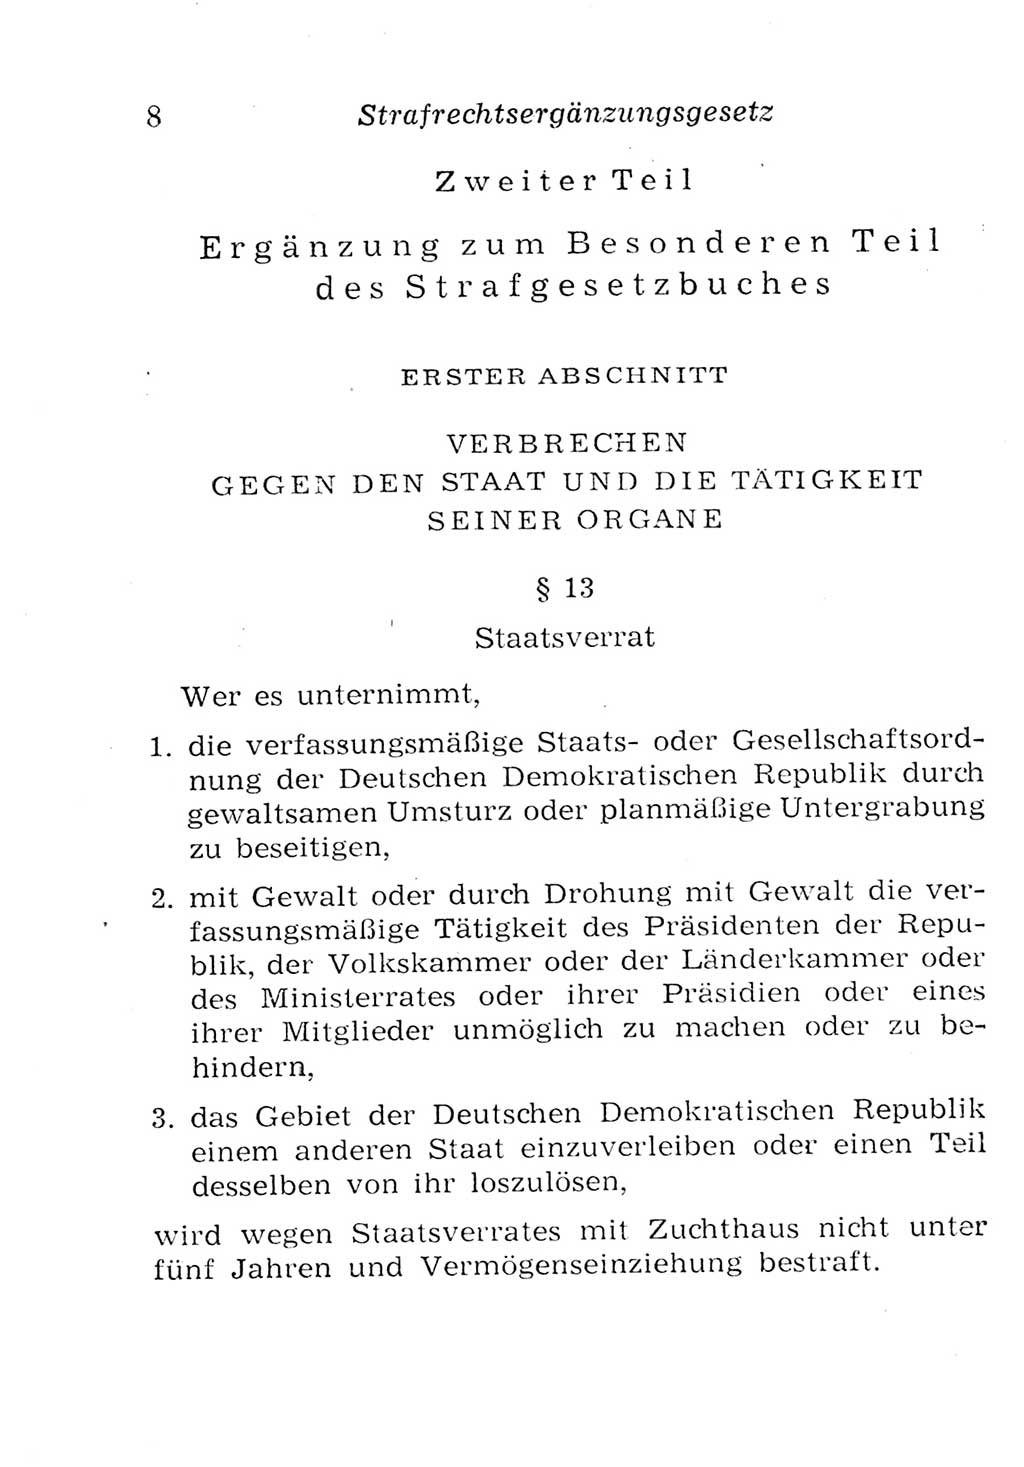 Strafgesetzbuch (StGB) und andere Strafgesetze [Deutsche Demokratische Republik (DDR)] 1957, Seite 8 (StGB Strafges. DDR 1957, S. 8)